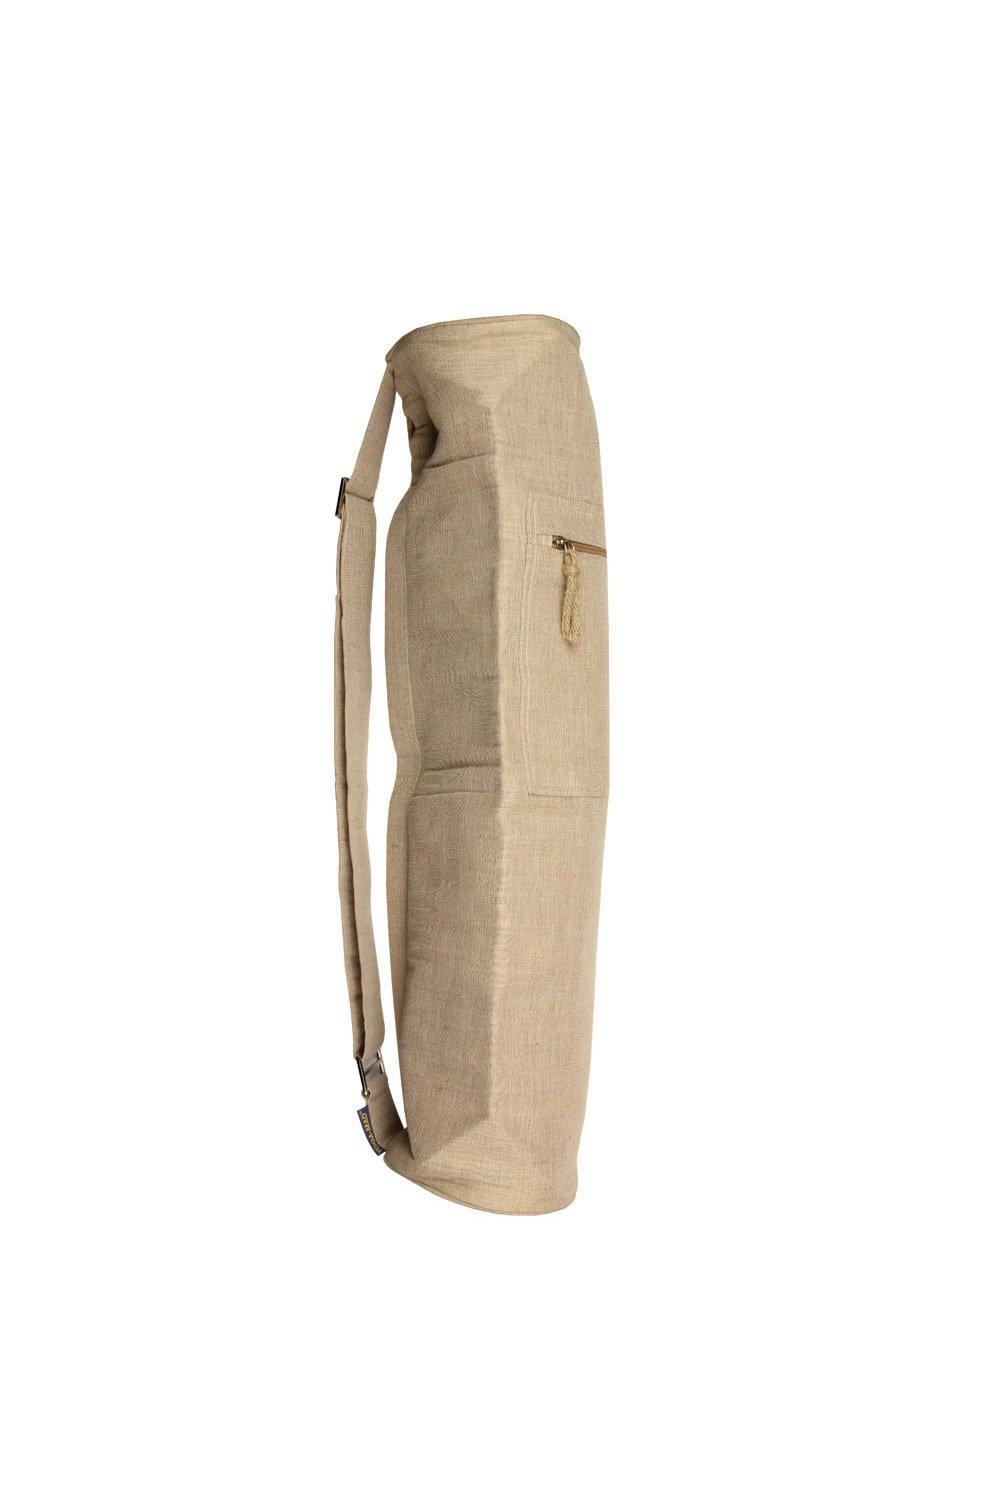 Джутовая сумка для коврика для йоги Yoga-Mad, обнаженная косметичка mior на молнии 19х21х9 см ручки для переноски крючок для подвешивания подкладка водонепроницаемая черный